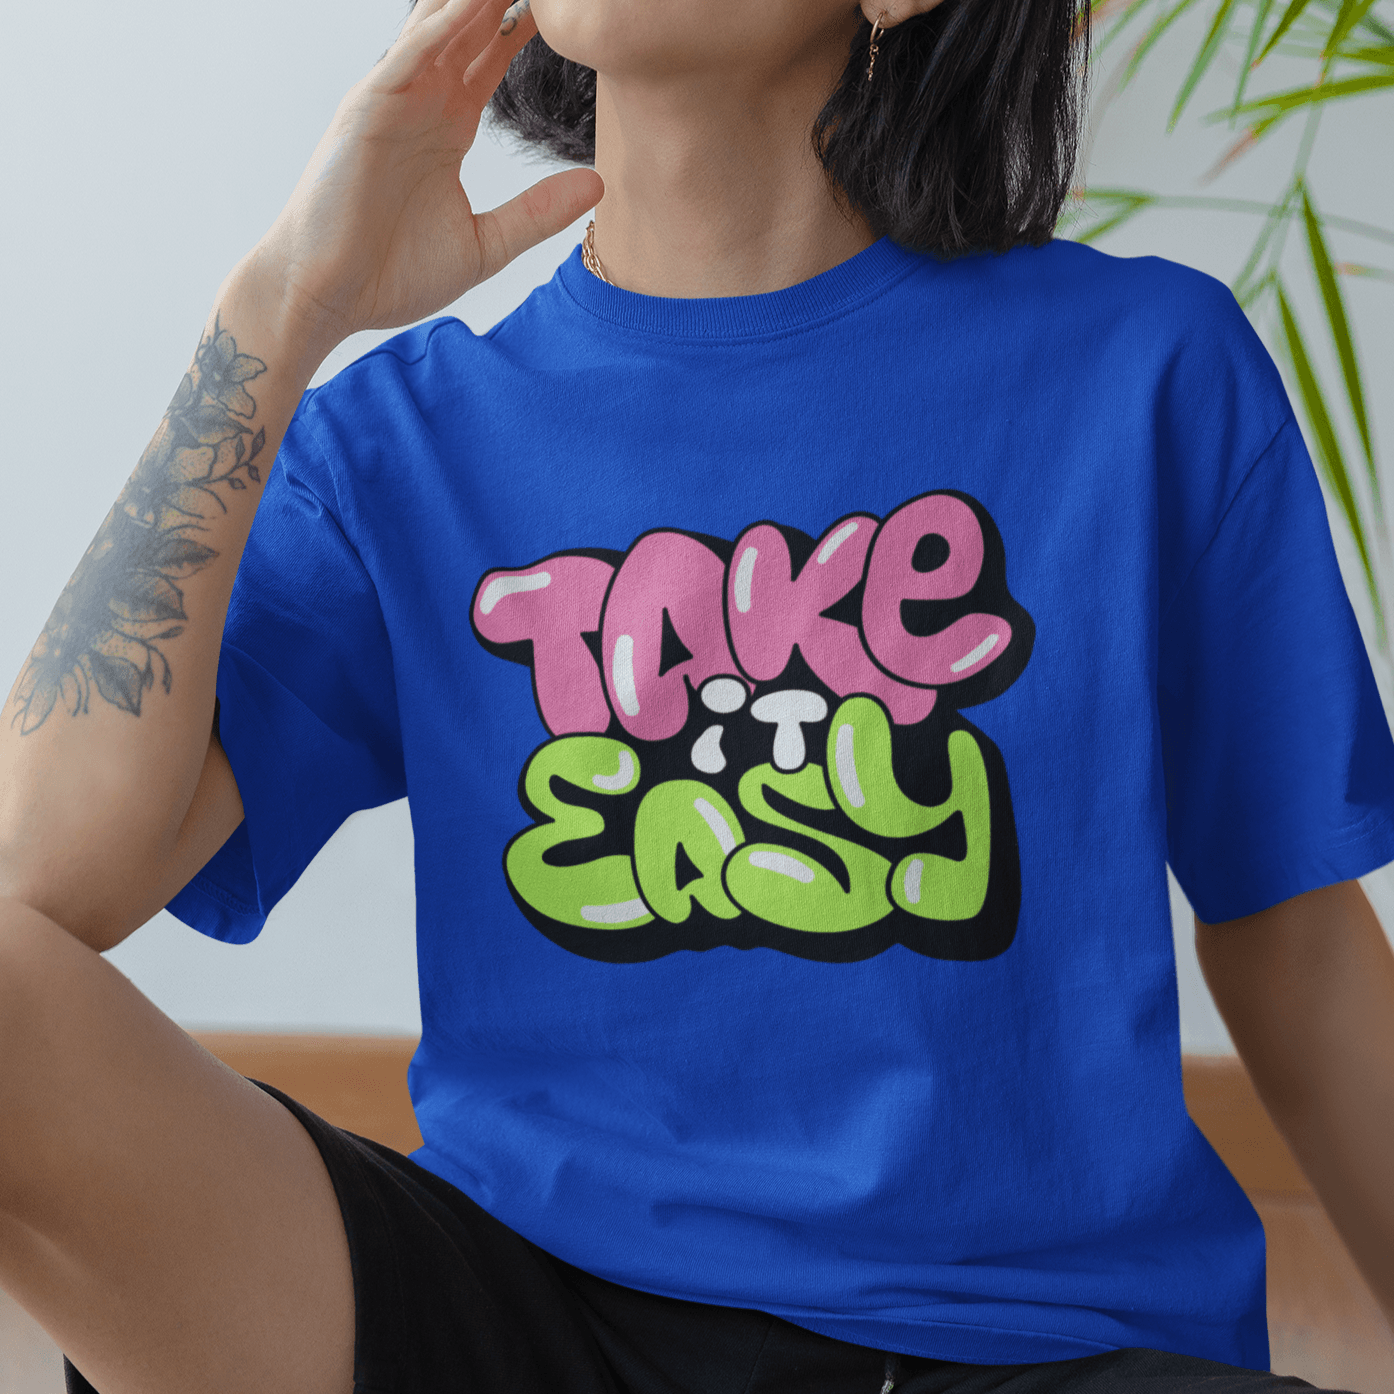 Take It Easy Oversized T-shirts - Unisex - Cute Stuff India